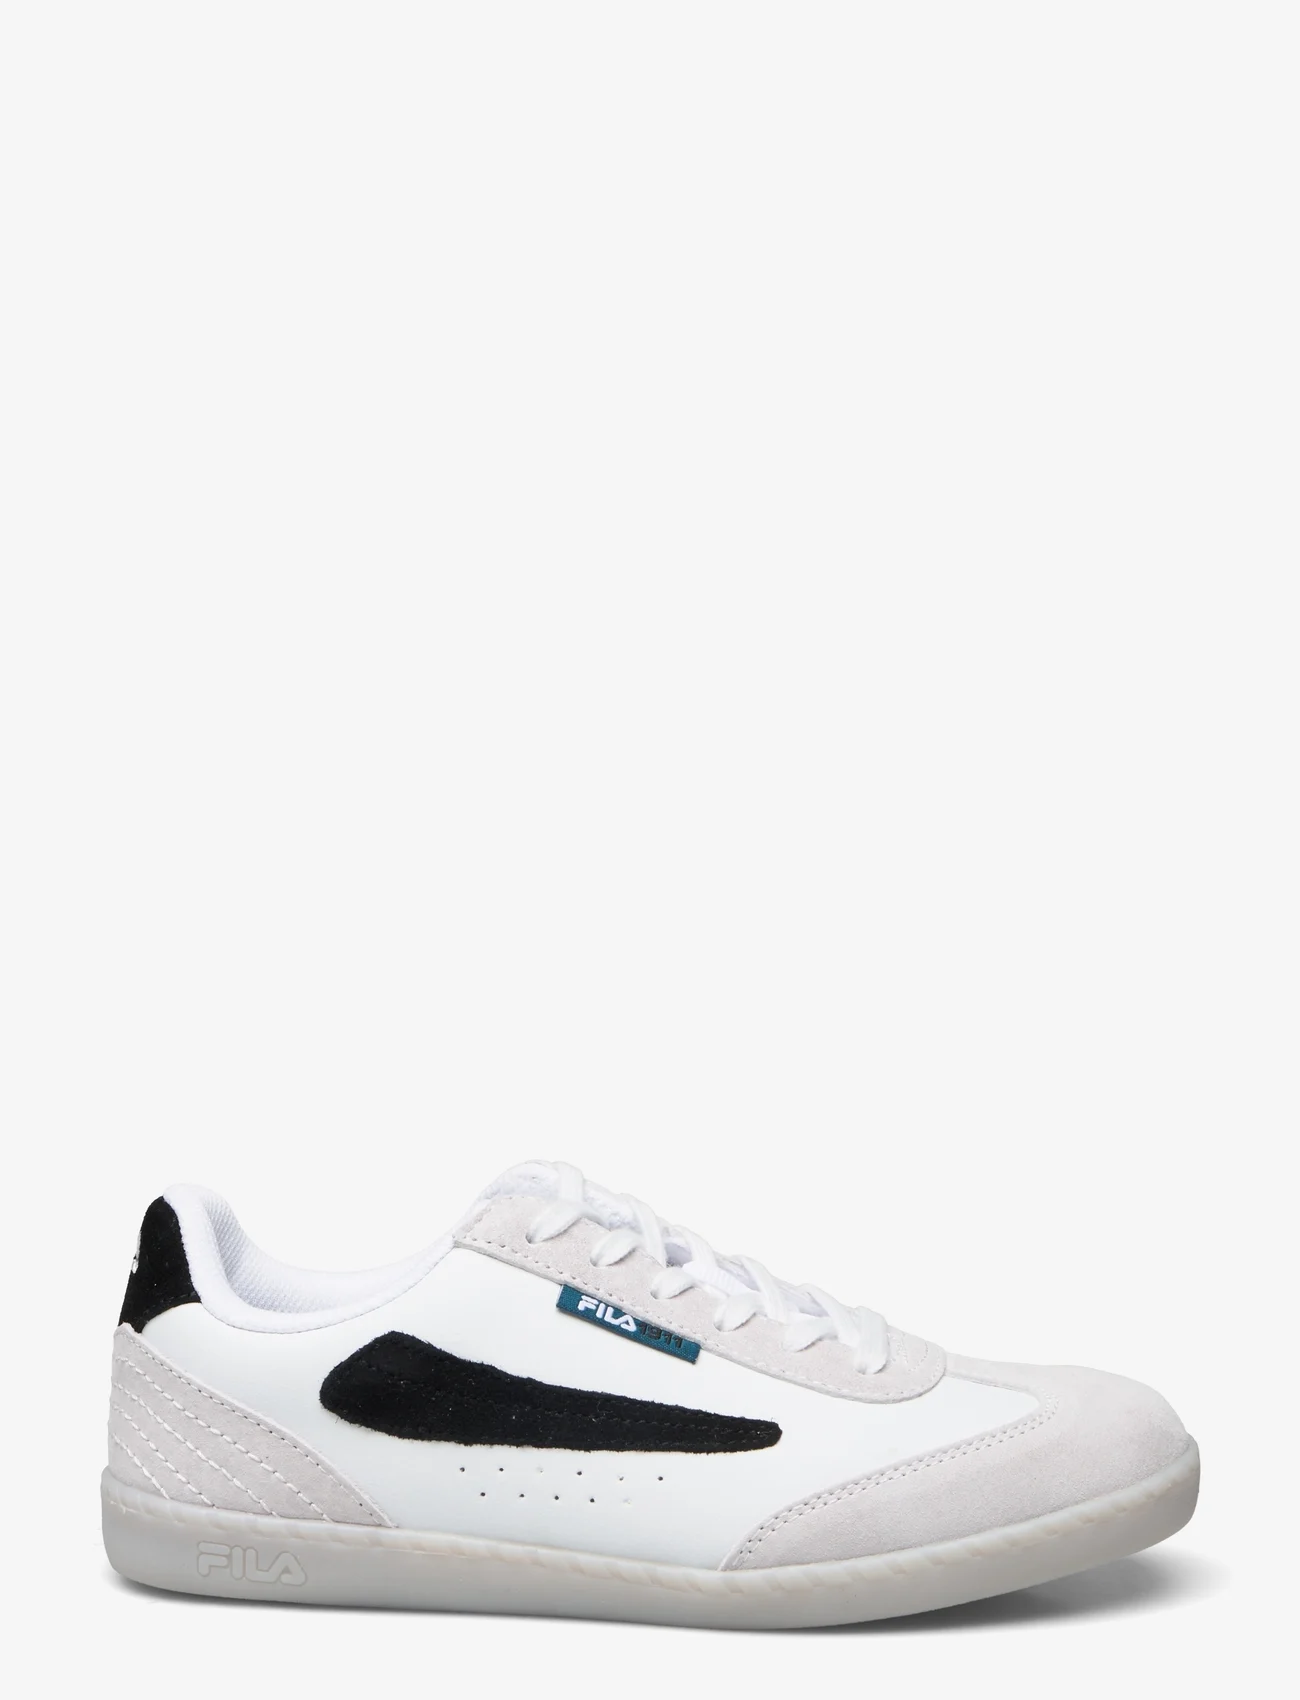 FILA - FILA BYB low wmn - lave sneakers - white - 1